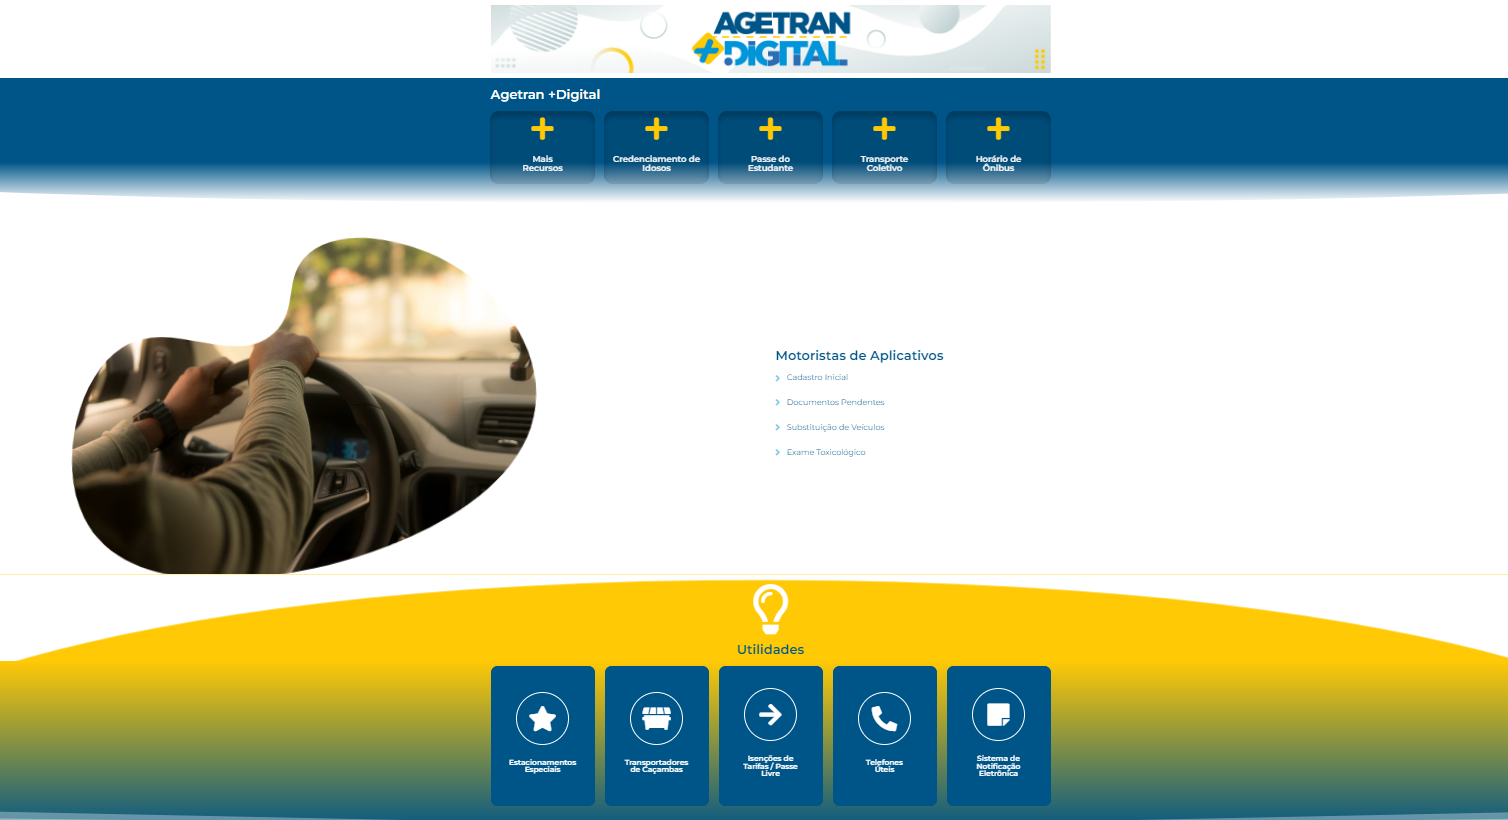 Nova 'Agetran digital' emitiu quase 300 credenciais a idosos em uma semana